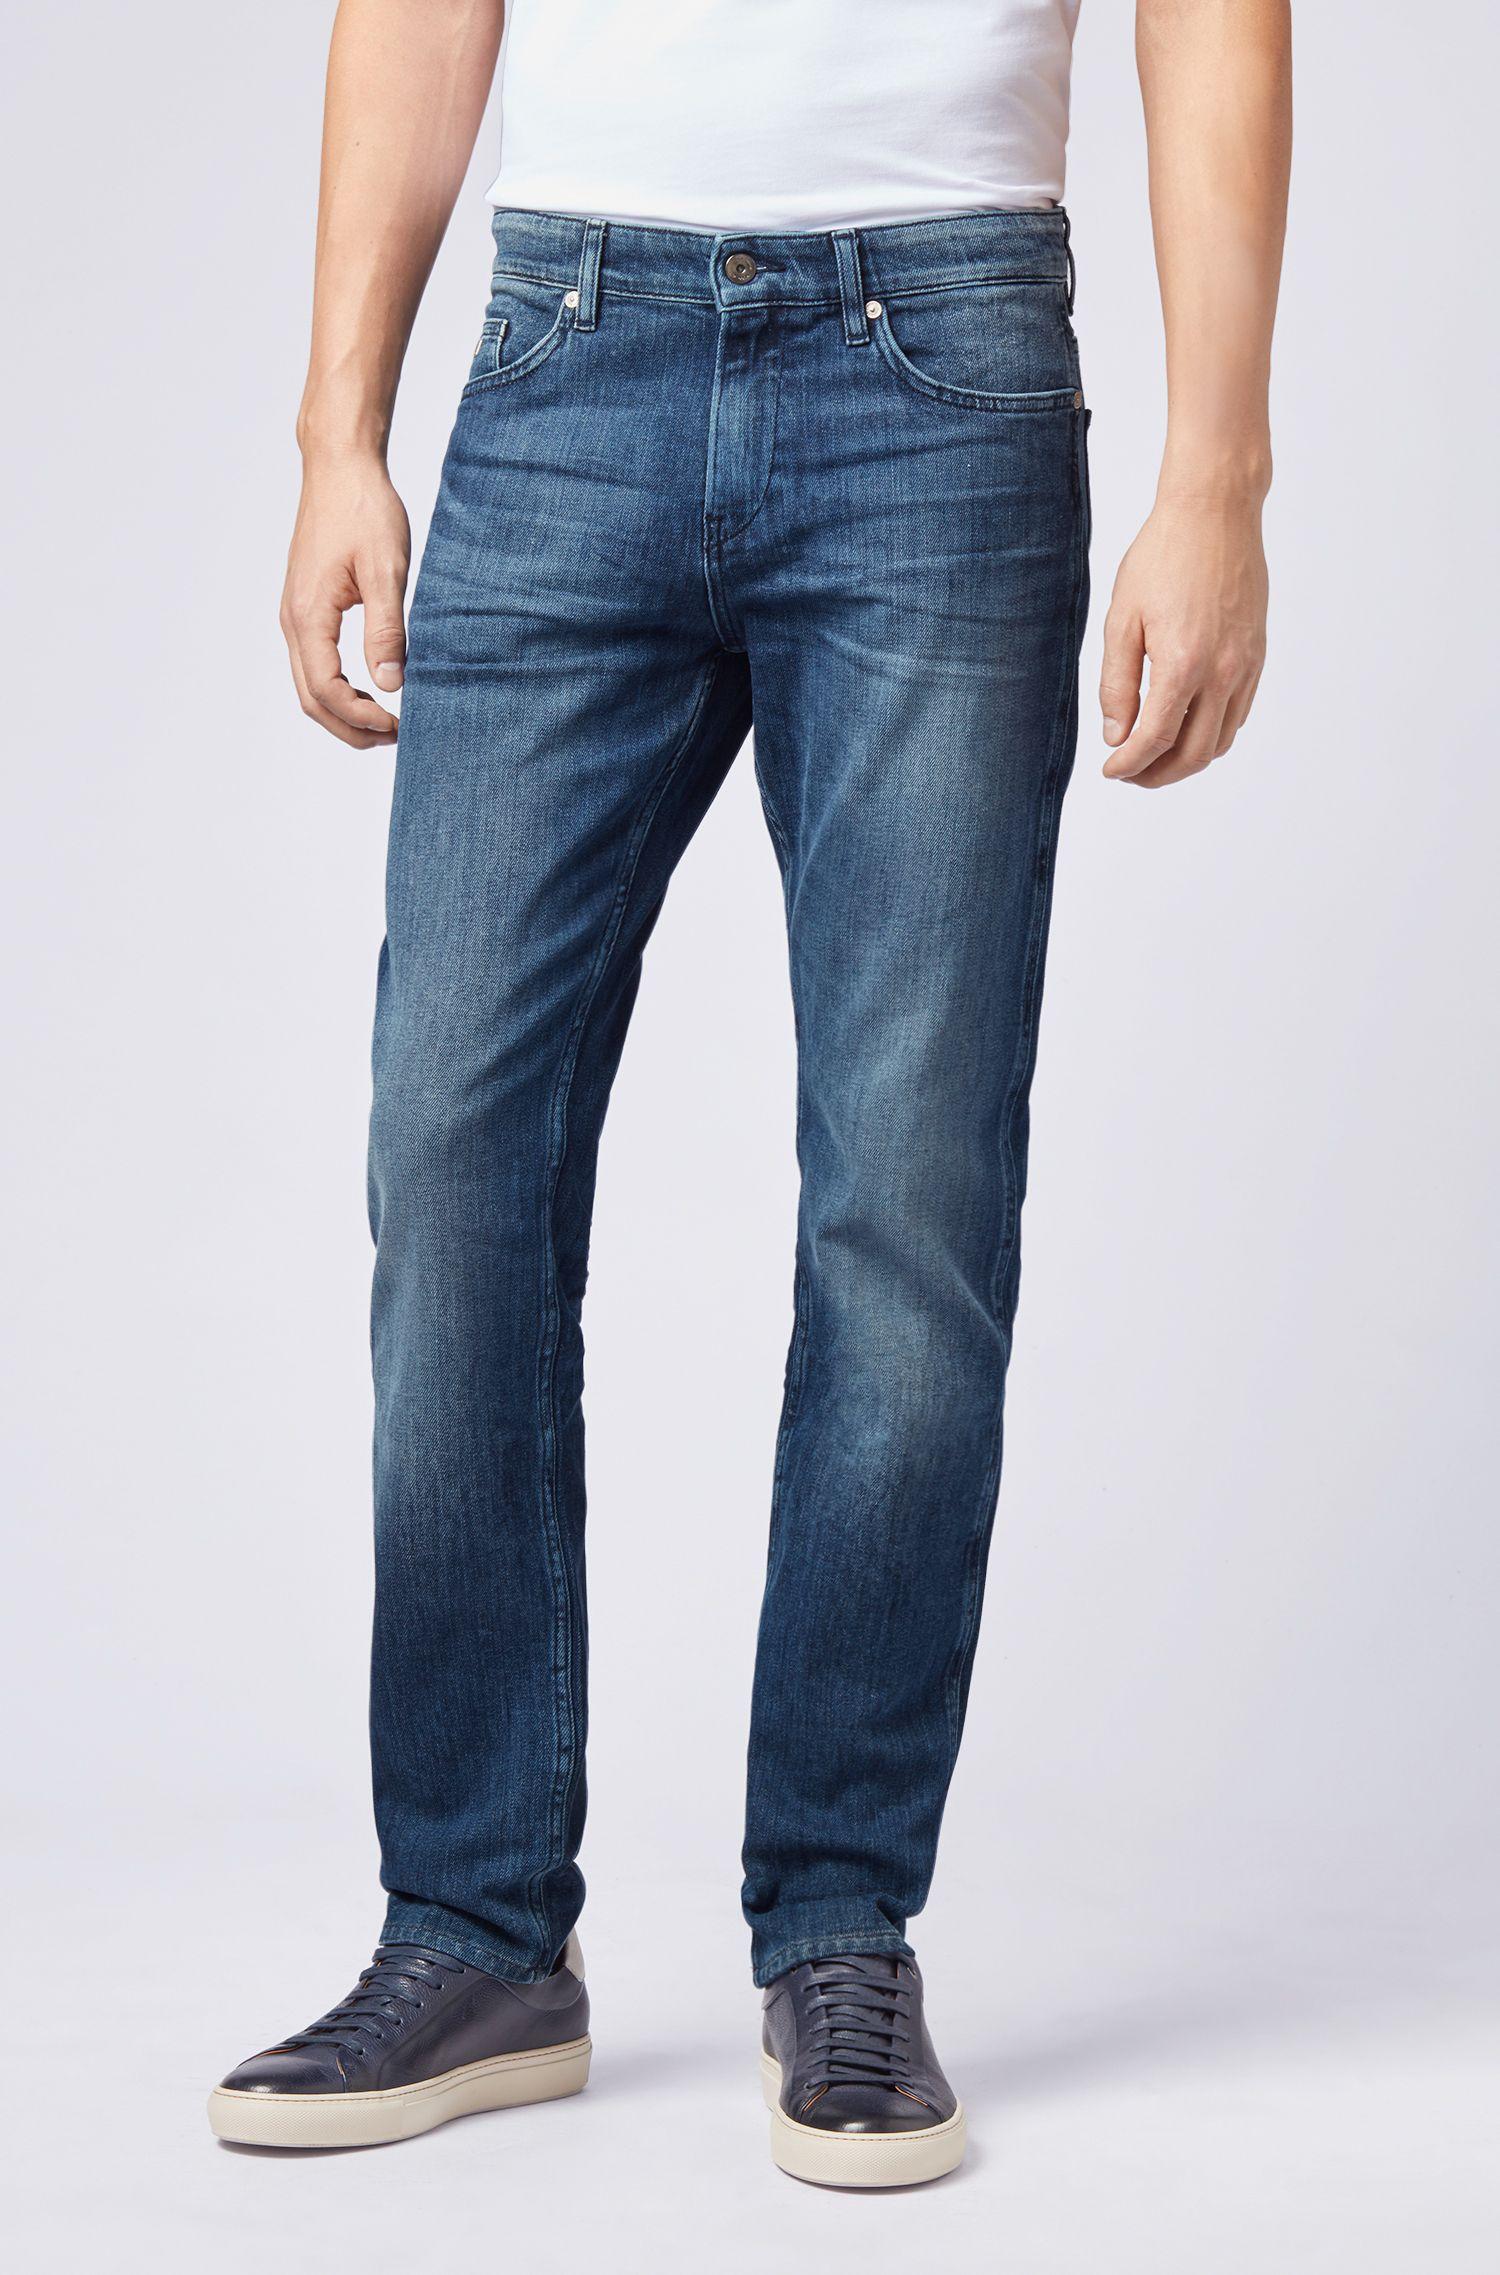 BOSS by Hugo Boss Cotton Slim Fit Jeans In Mid Wash Denim in bt bu ...